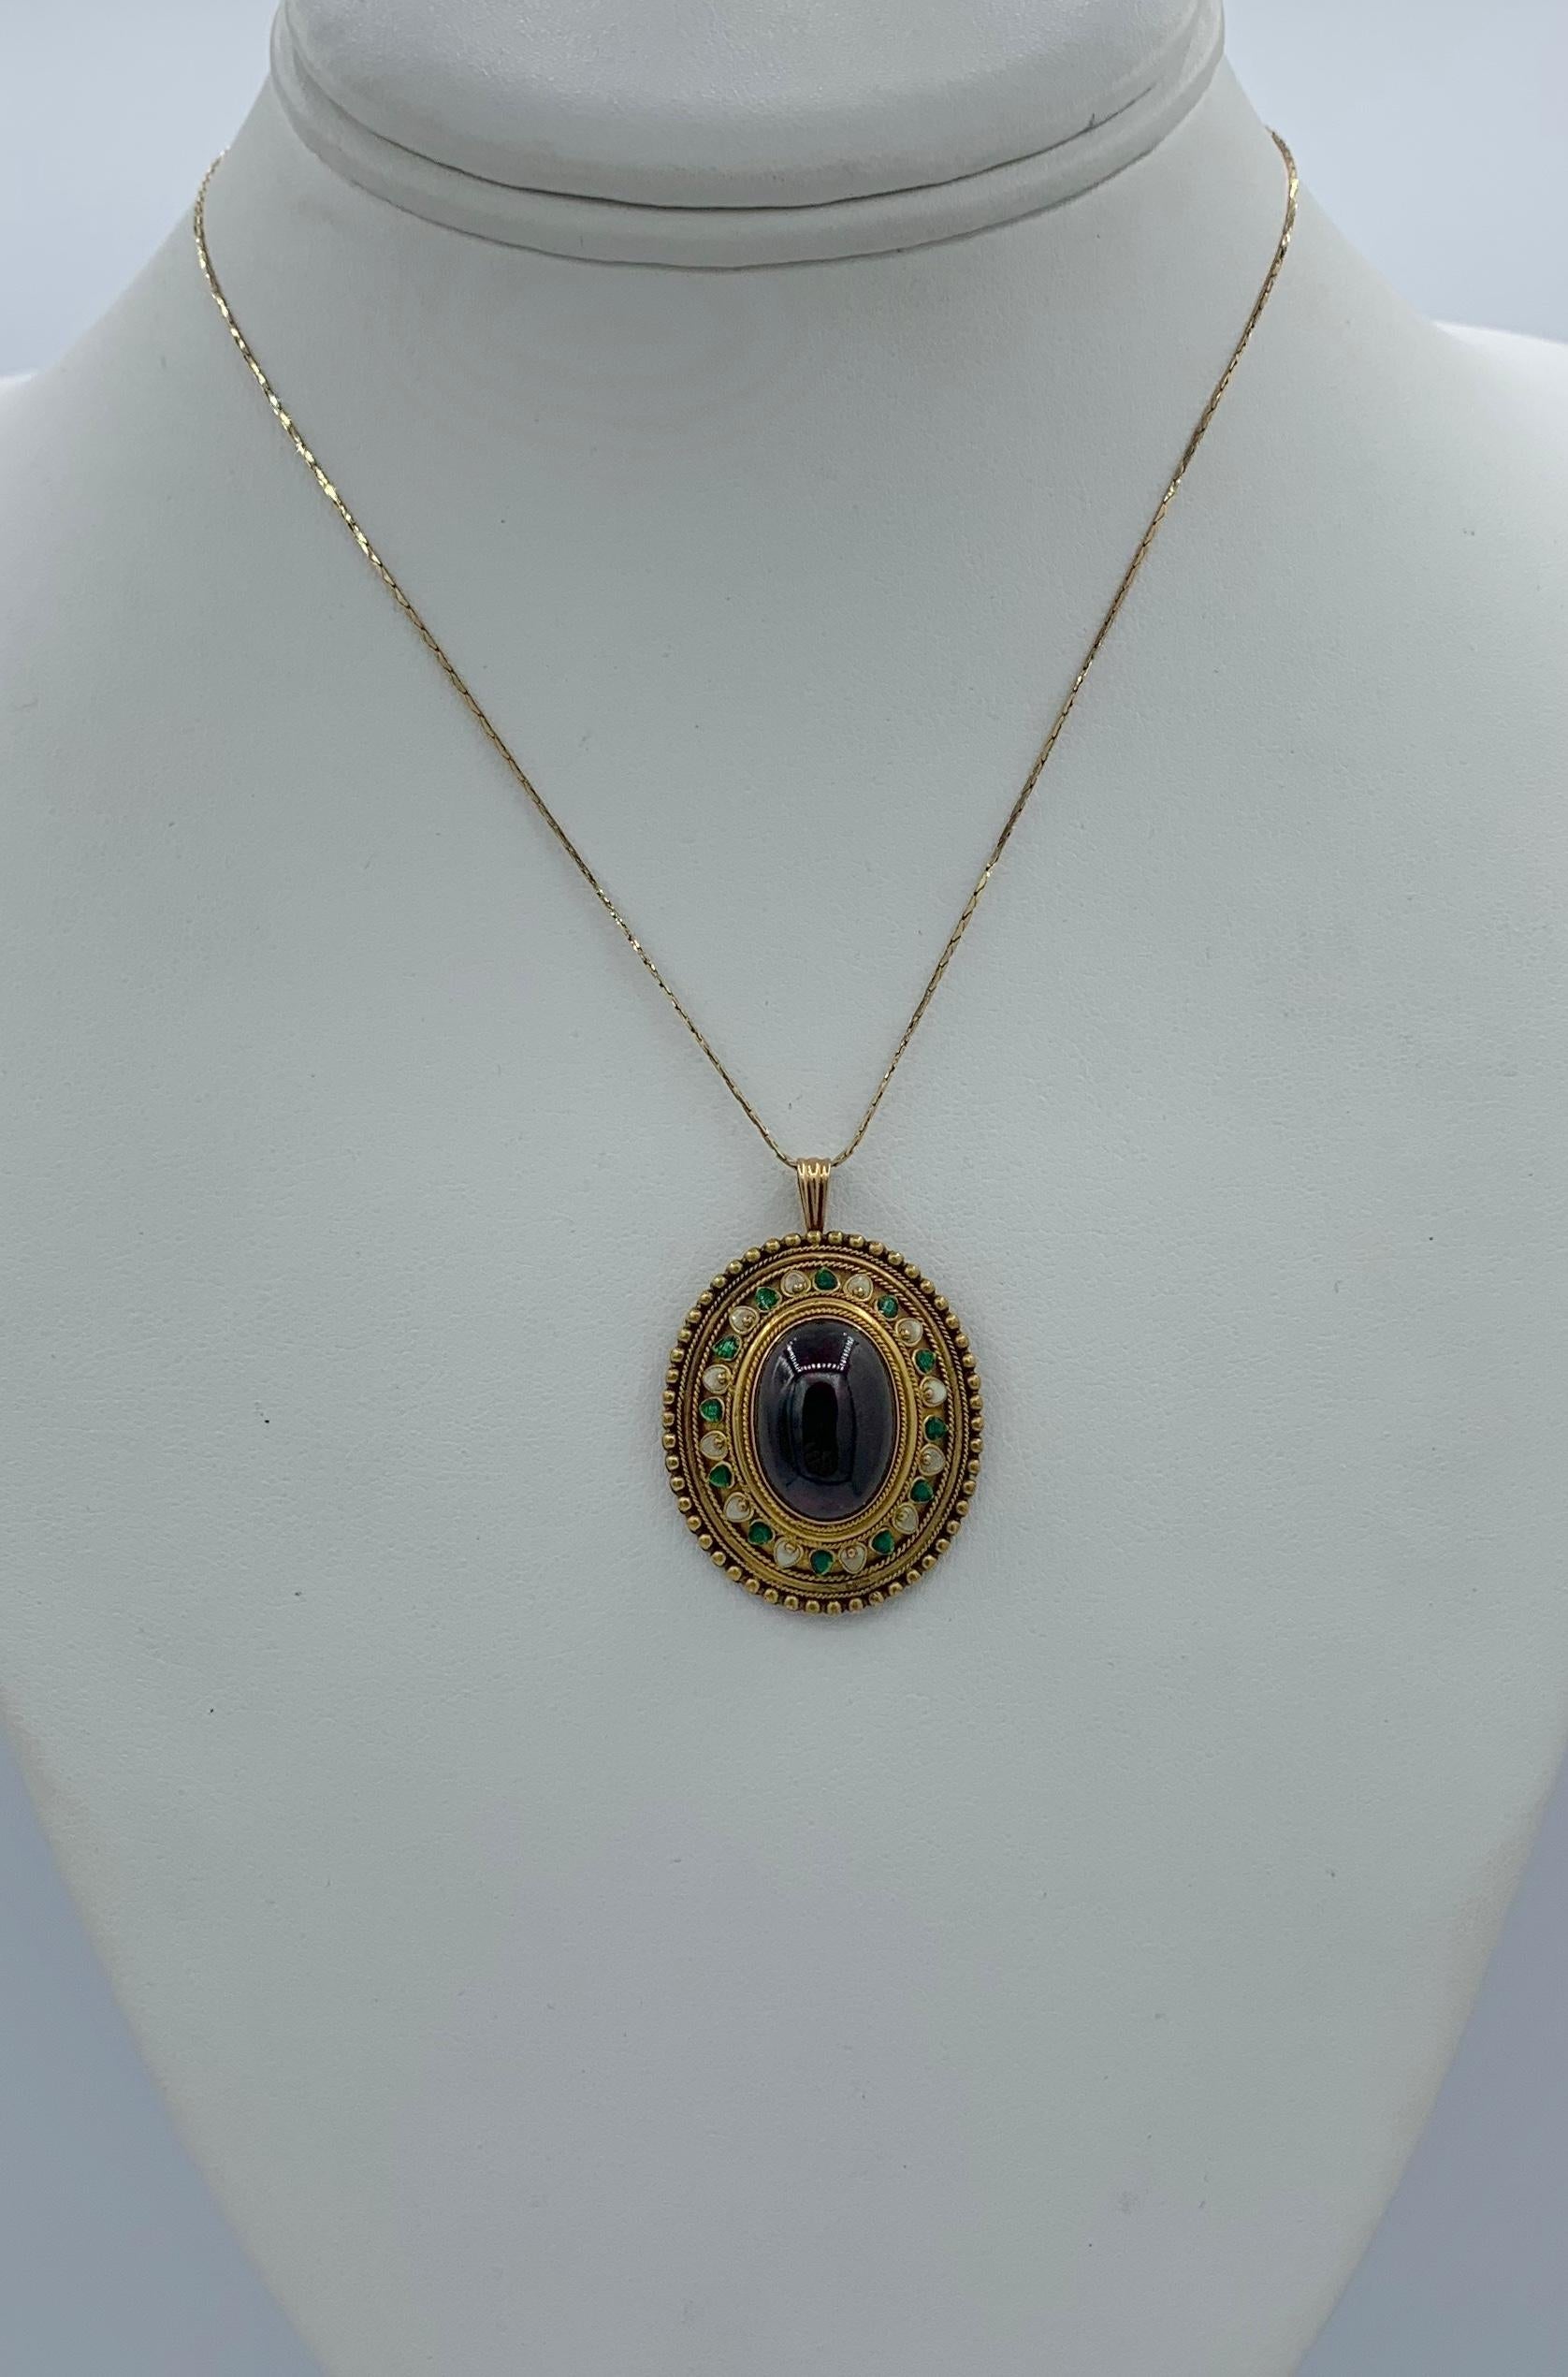 Etruscan Revival Garnet Enamel Gold Pendant Necklace Circa 1860 Museum Quality For Sale 5